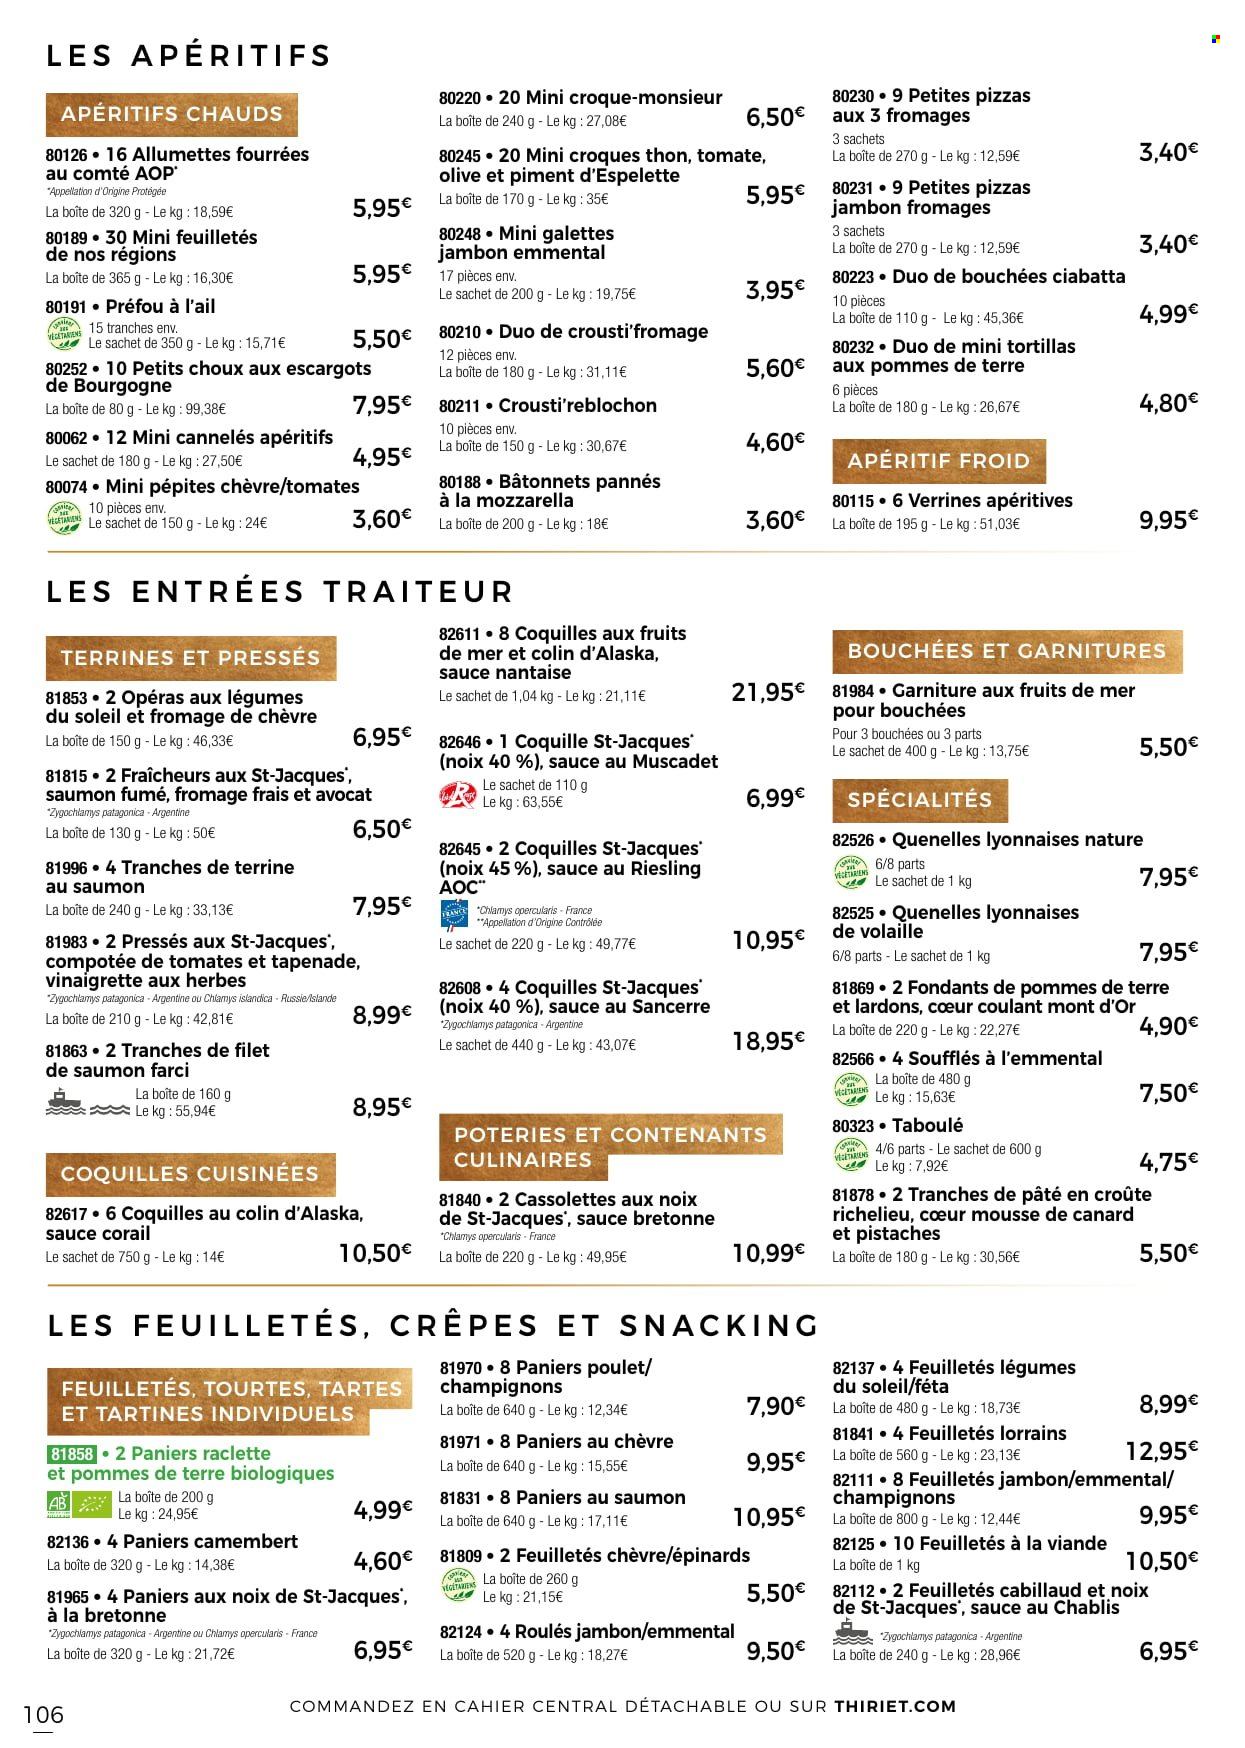 thumbnail - Catalogue Thiriet - 24/11/2022 - 31/12/2022 - Produits soldés - bouchées, ciabatta, galettes, tortilla, escargots, crêpes, cabillaud, pavés de saumon, pizza, croque-monsieur, saumon farci, pâté en croûte, feuilletés apéritifs, brochettes apéritifs, préfou, allumettes, lardons, mousse de canard, saumon fumé, camembert, féta, fromage de chèvre, fromage frais, Reblochon, La Raclette, Mont d'Or, tapenade, vinaigrette, pistache, apéritif. Page 106.